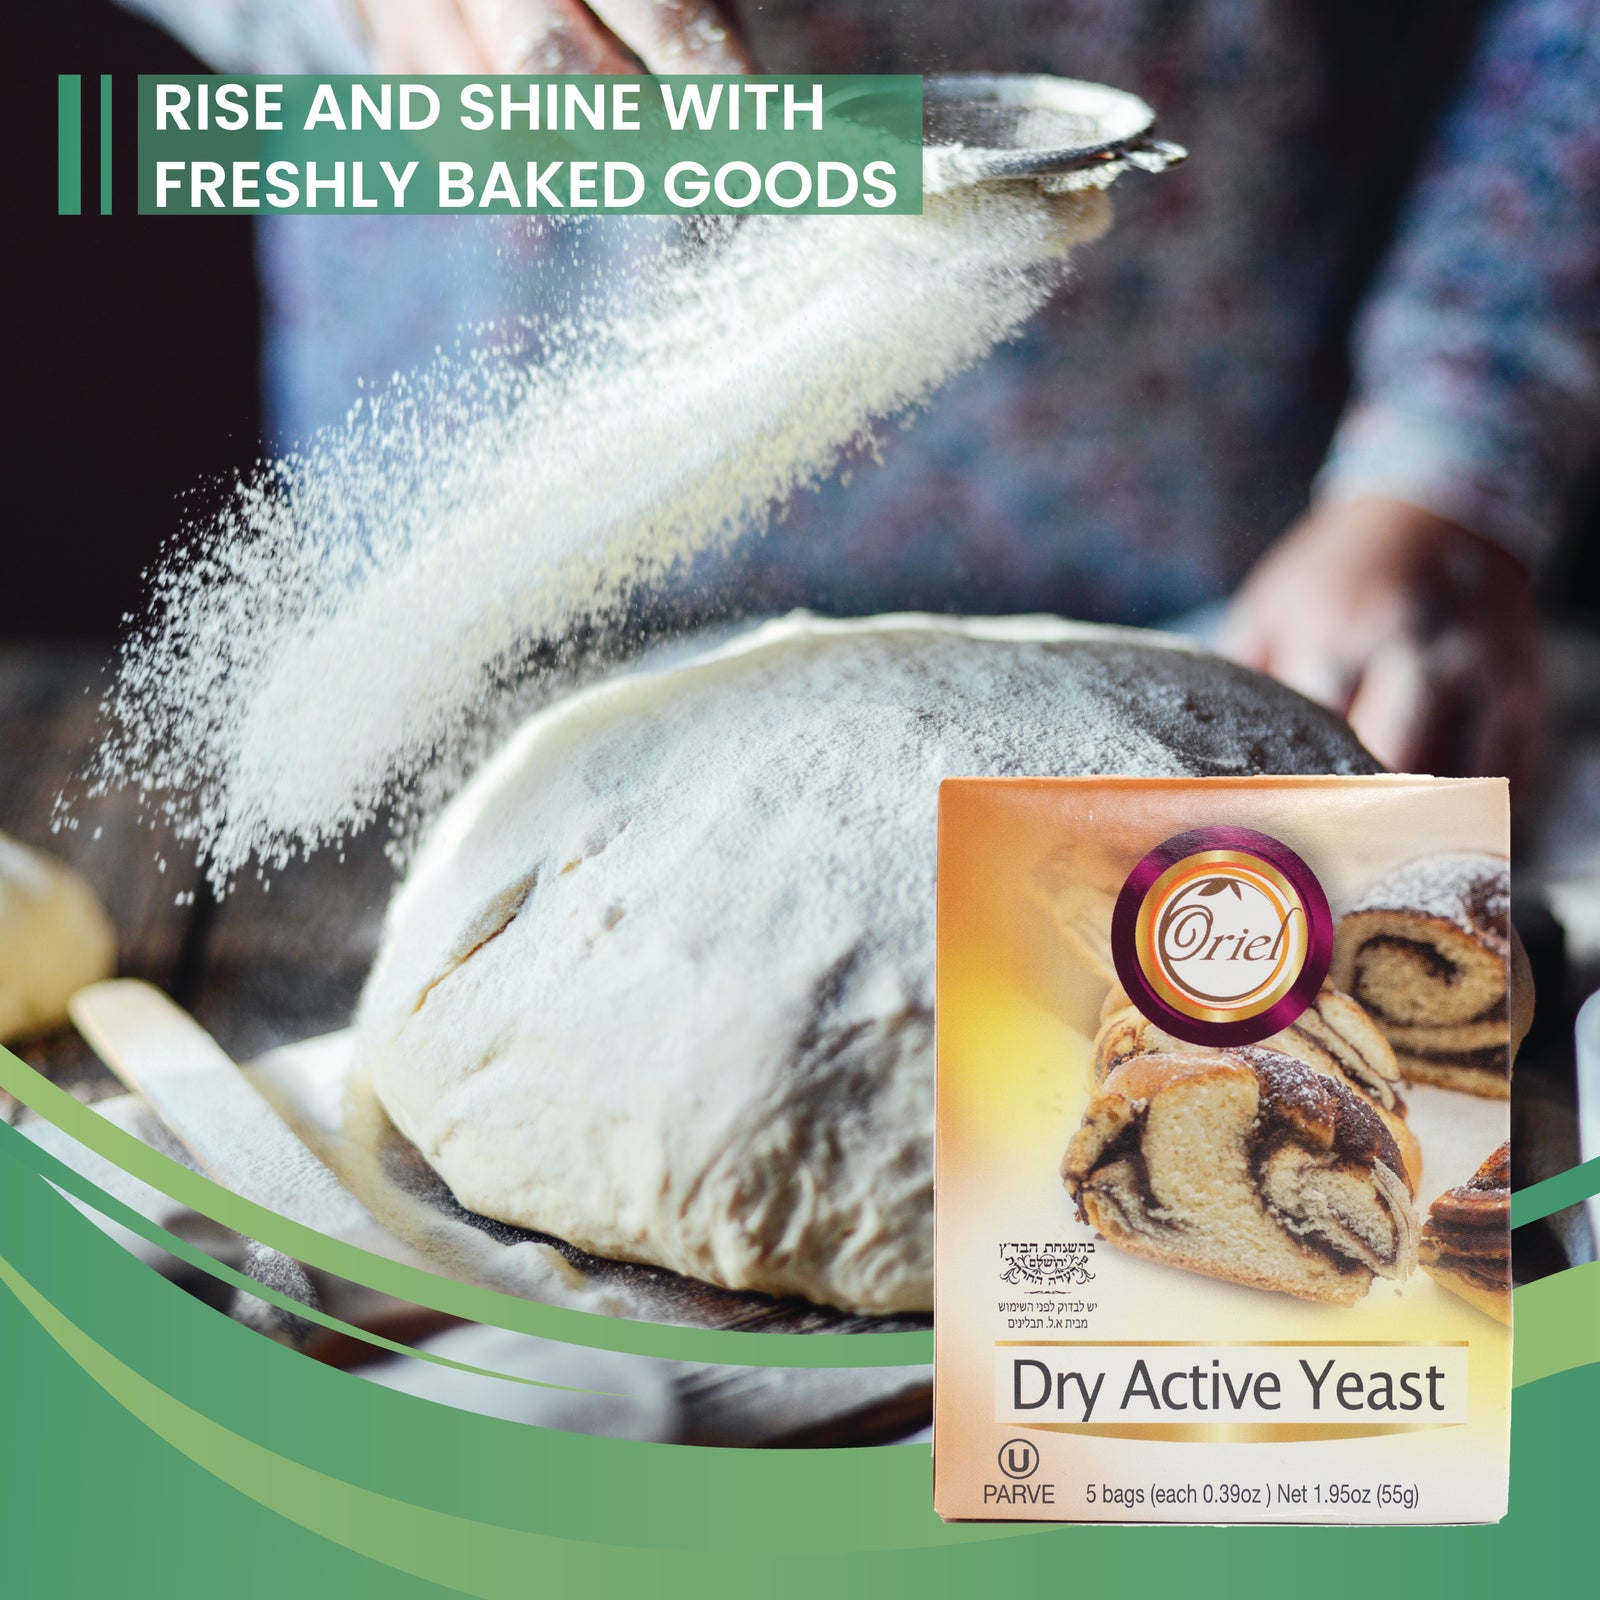 Oriel Dry Active Yeast